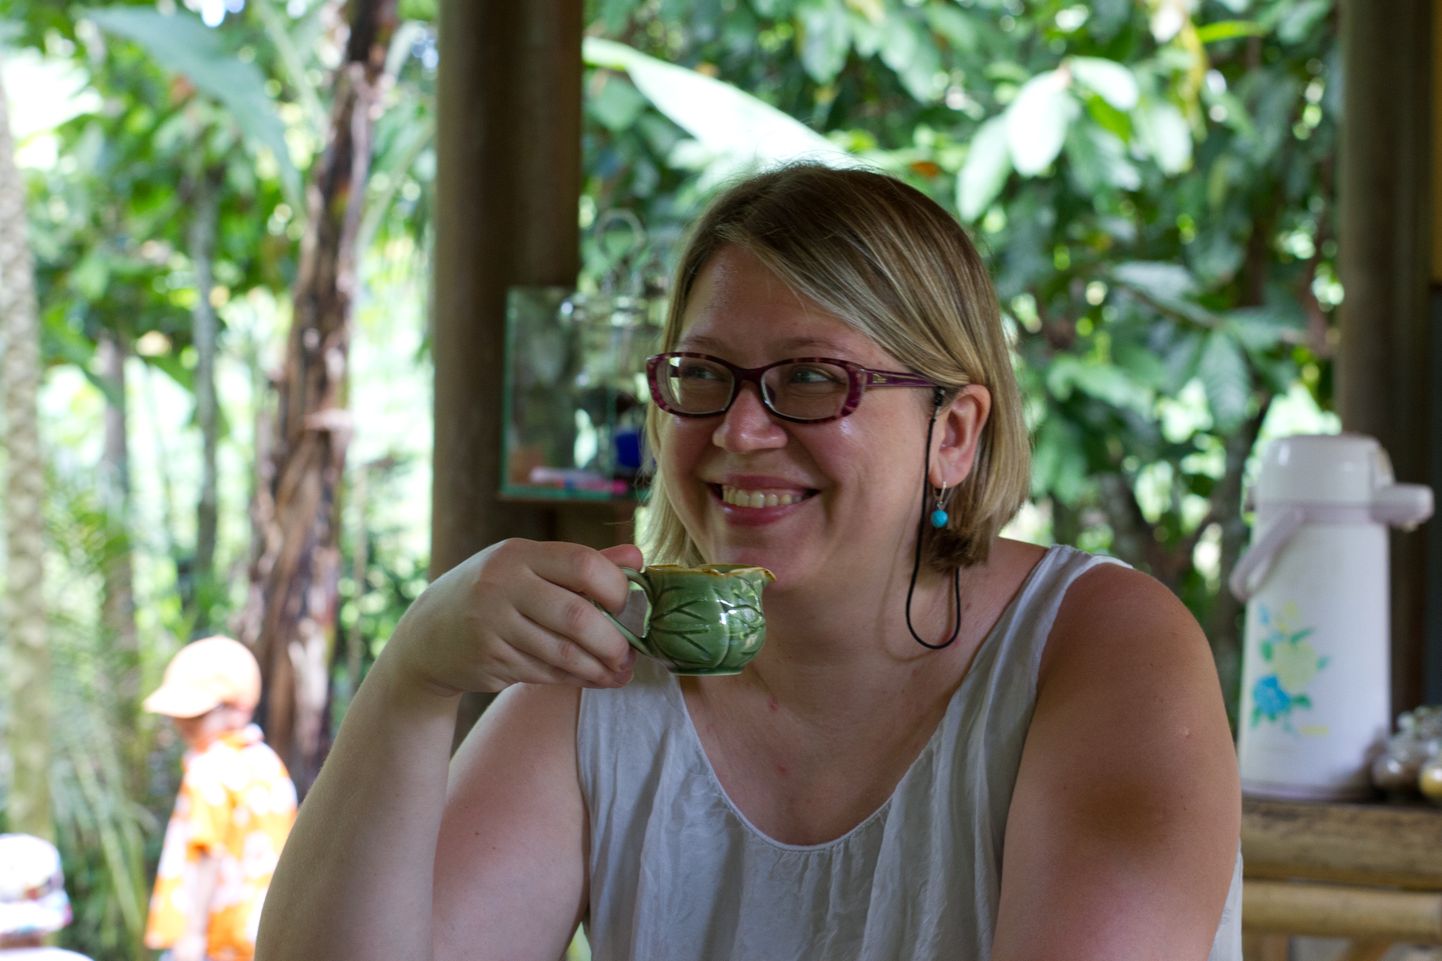 Balil kohvi nautimas